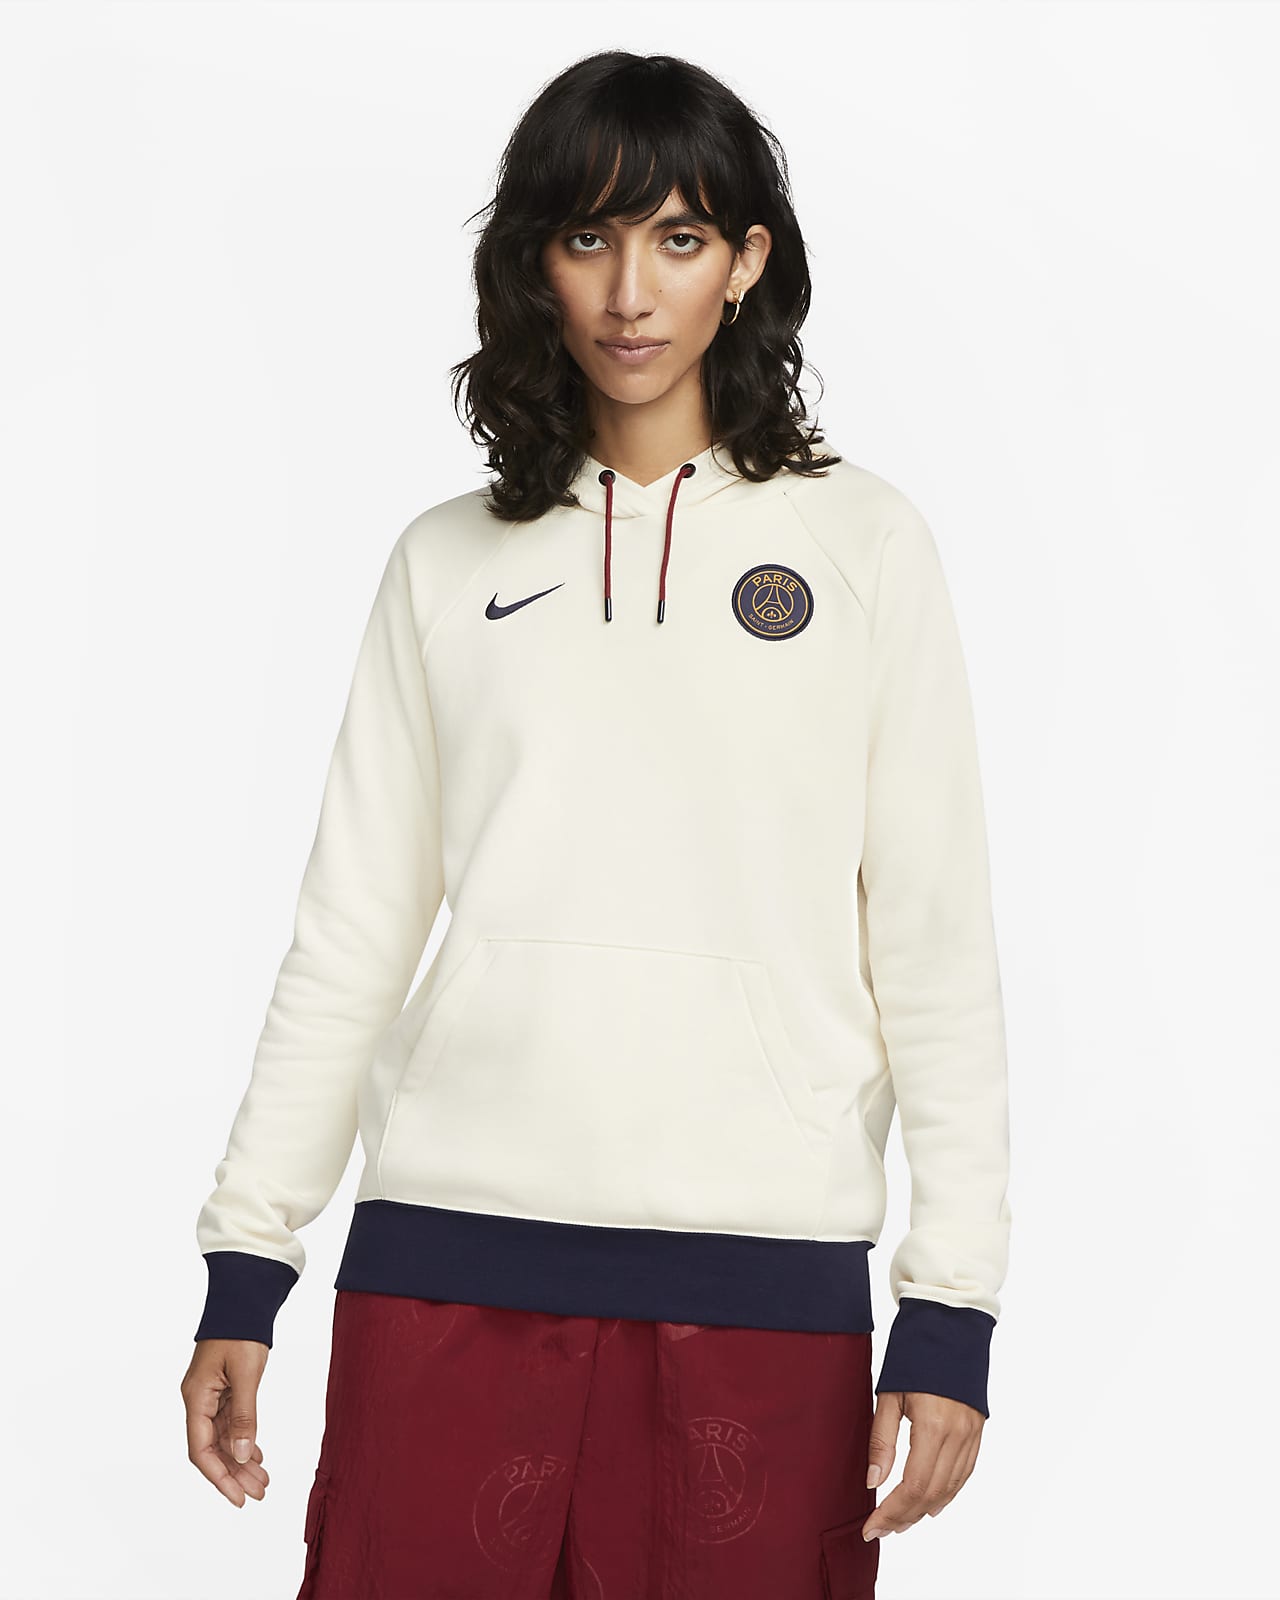 Γυναικείο ποδοσφαιρικό φούτερ φλις με κουκούλα Nike Παρί Σεν Ζερμέν Essential